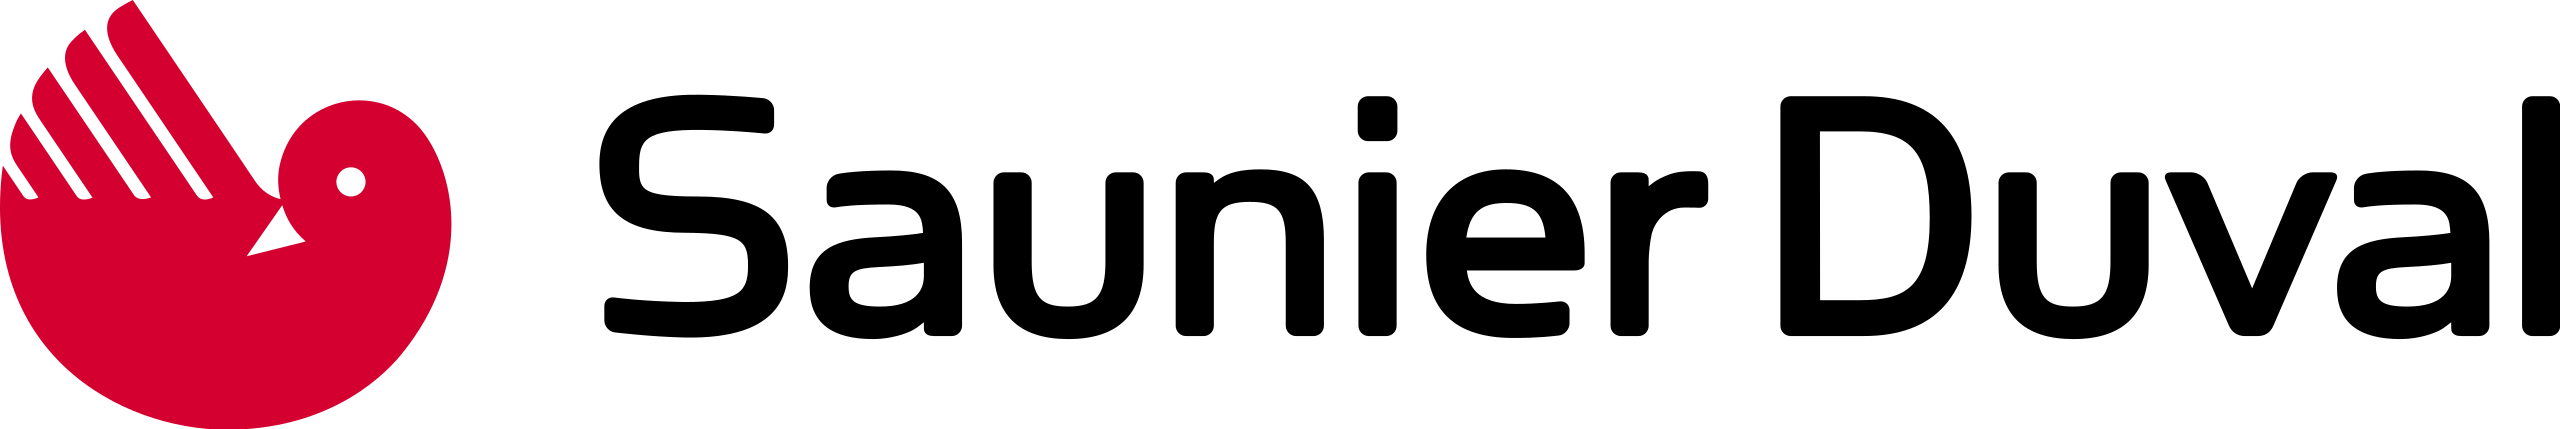 Logo_Saunier_Duval.svg